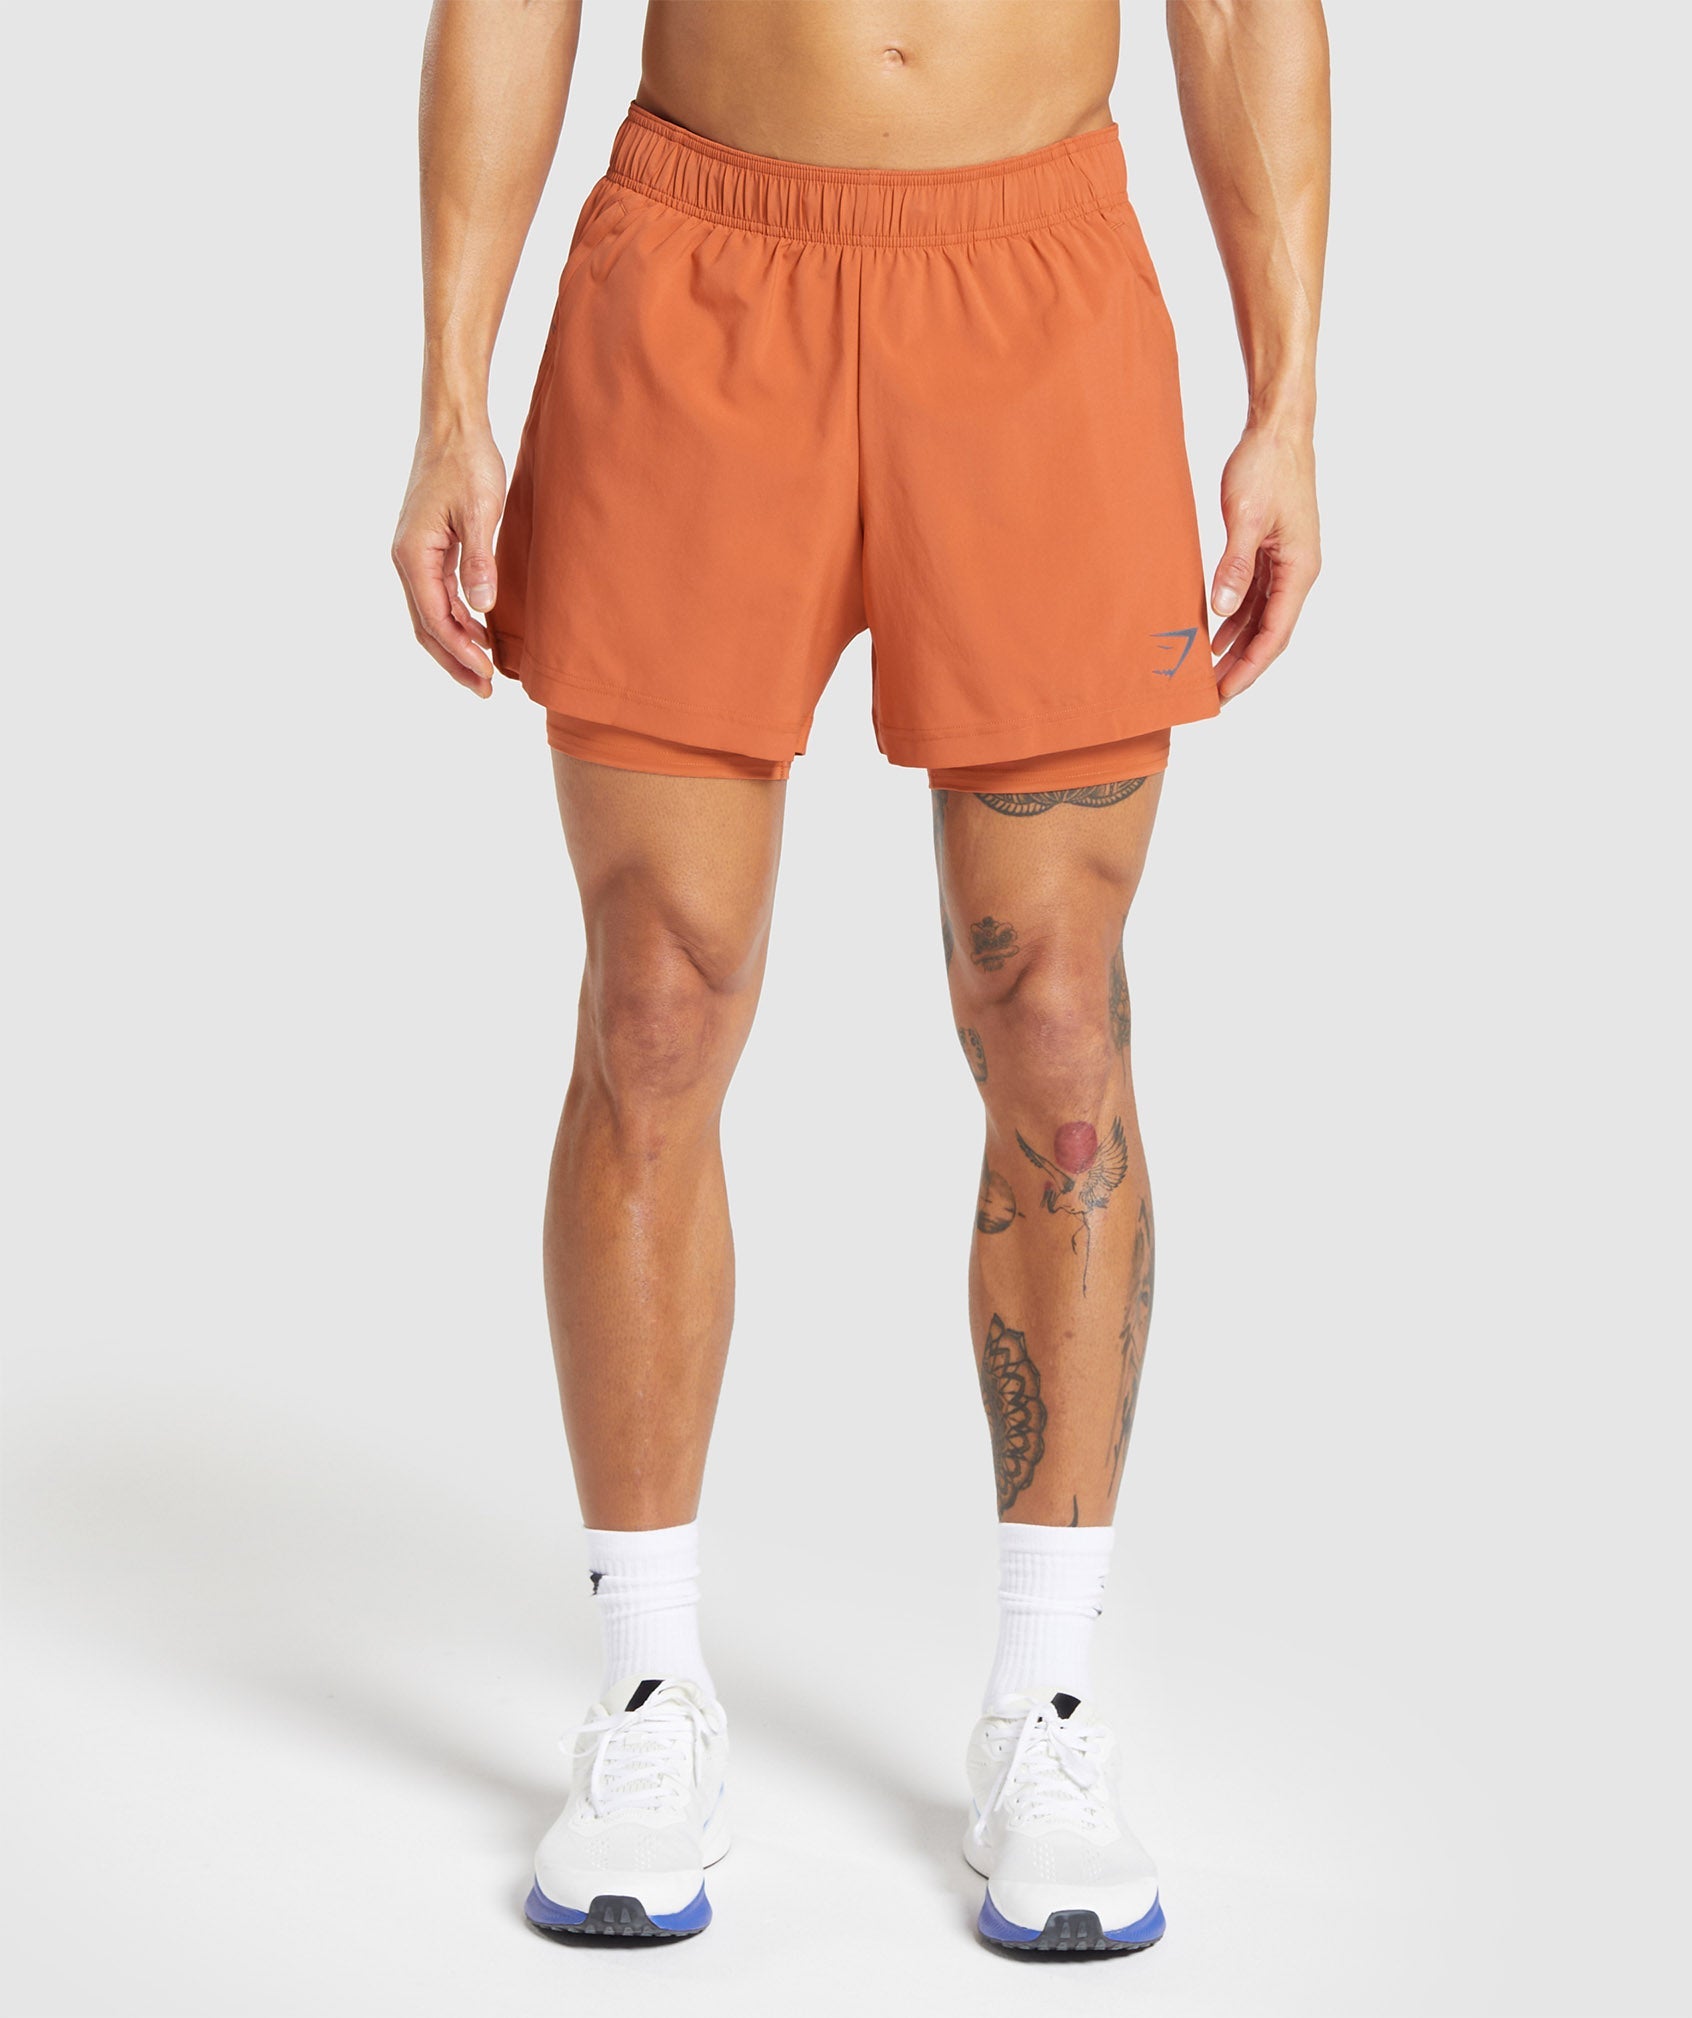 Sport 5" 2 In 1 Shorts in Muted Orange/Muted Orange